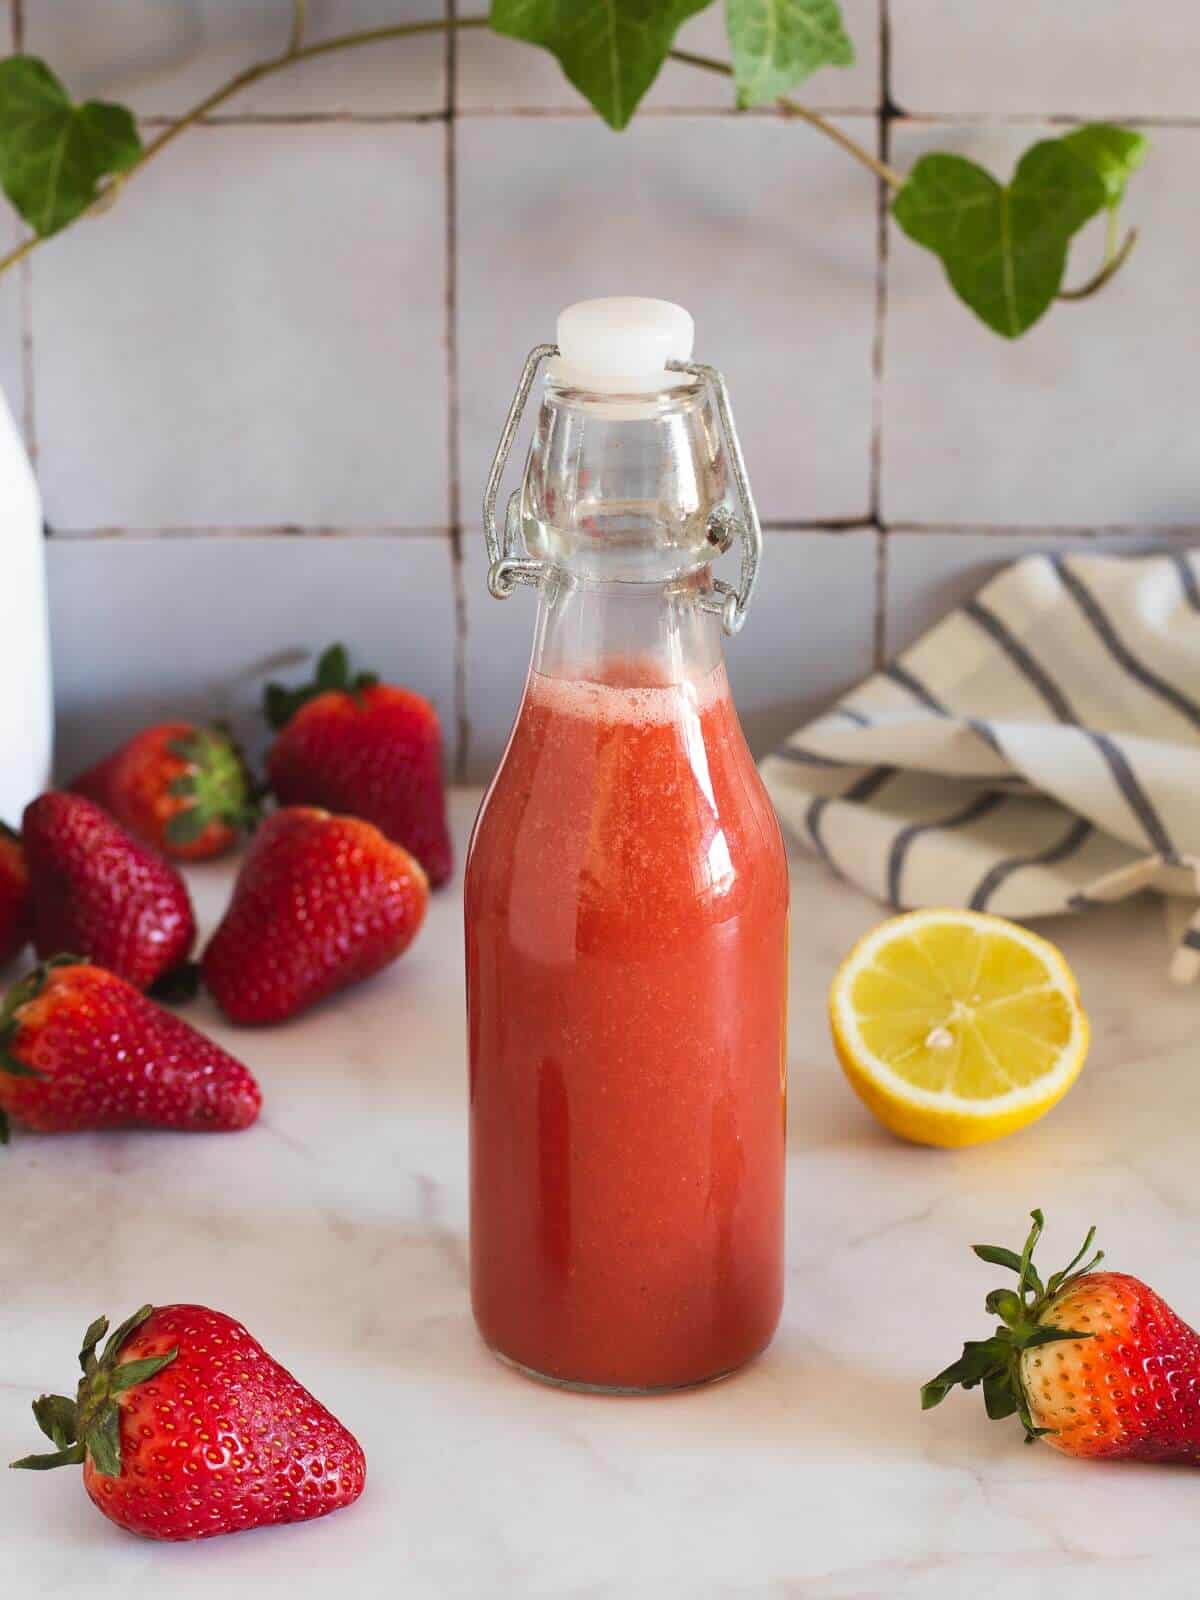 bottled freshly juiced pure strawberry juice